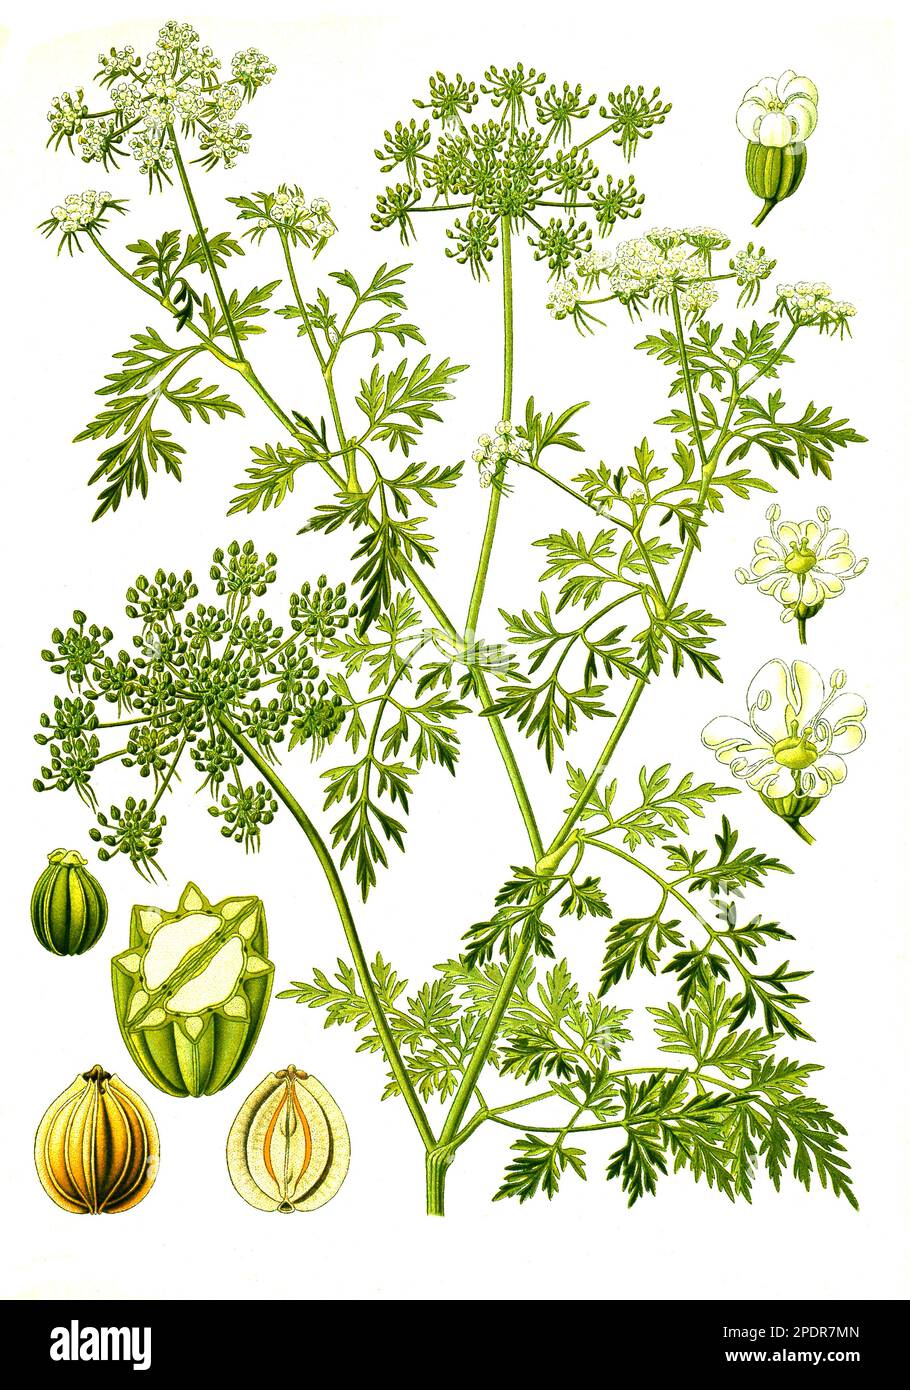 Heilpflanze, Hundspetersilie (Aethusa cynapium), Historisch, digital restaurierte Reproduktion von einer Vorlage aus dem 18. Jahrhundert Stock Photo